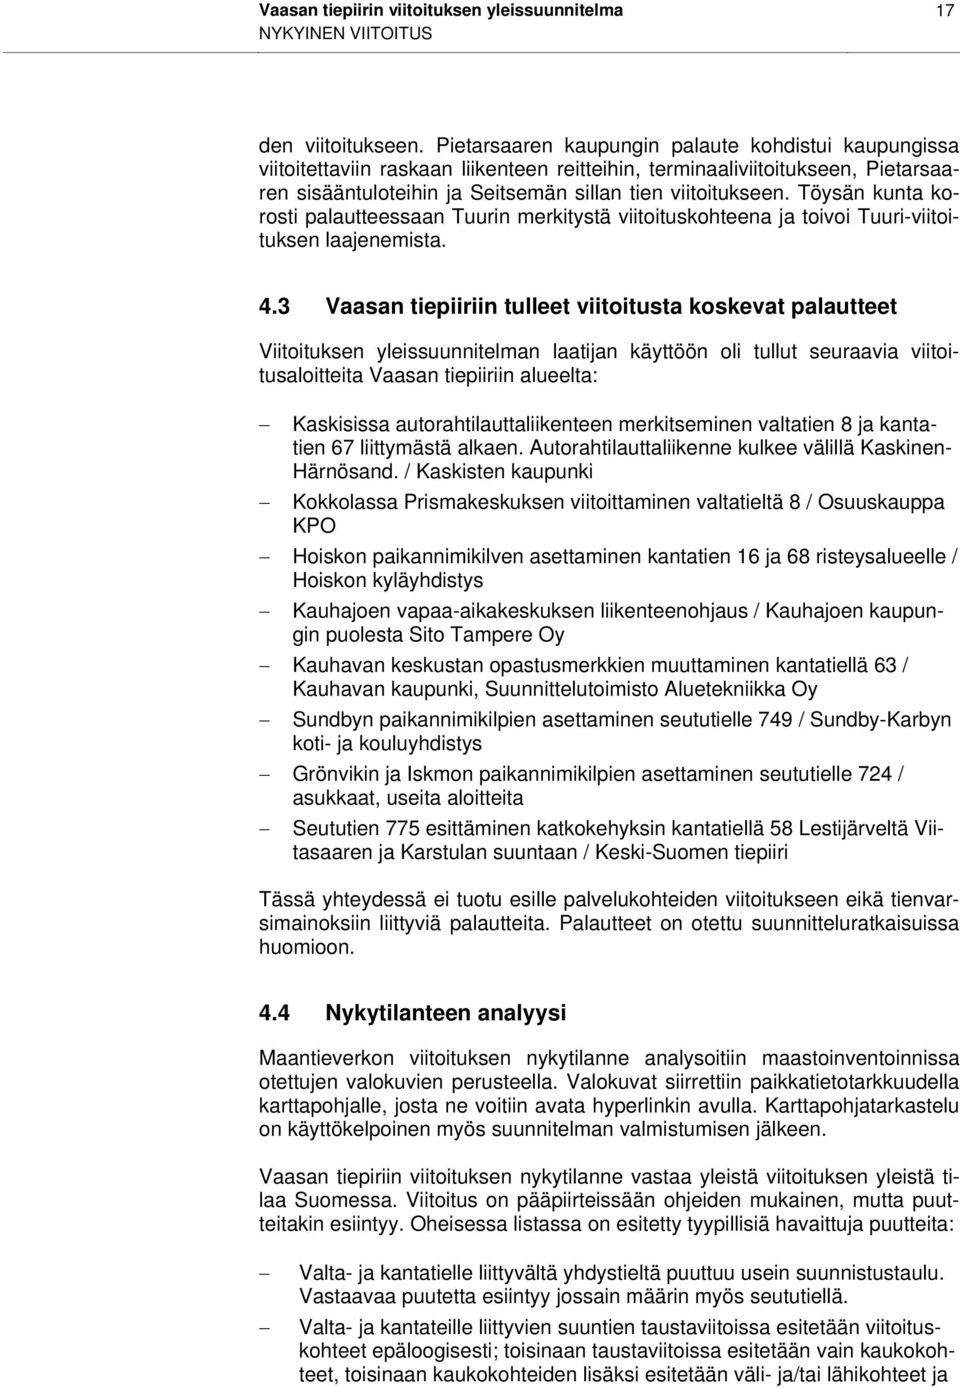 Töysän kunta korosti palautteessaan Tuurin merkitystä viitoituskohteena ja toivoi Tuuri-viitoituksen laajenemista. 4.